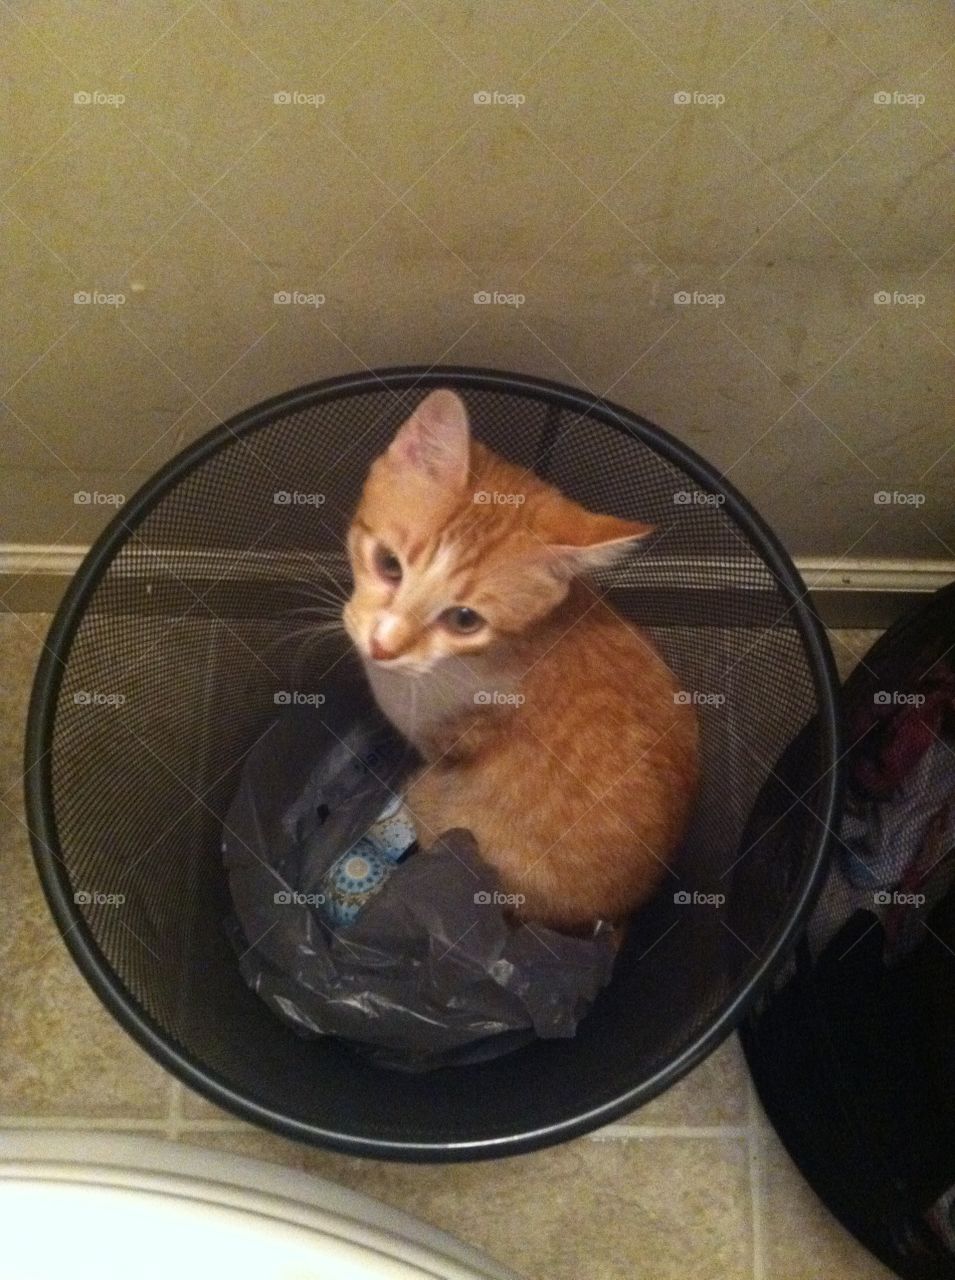 Kitten in trash